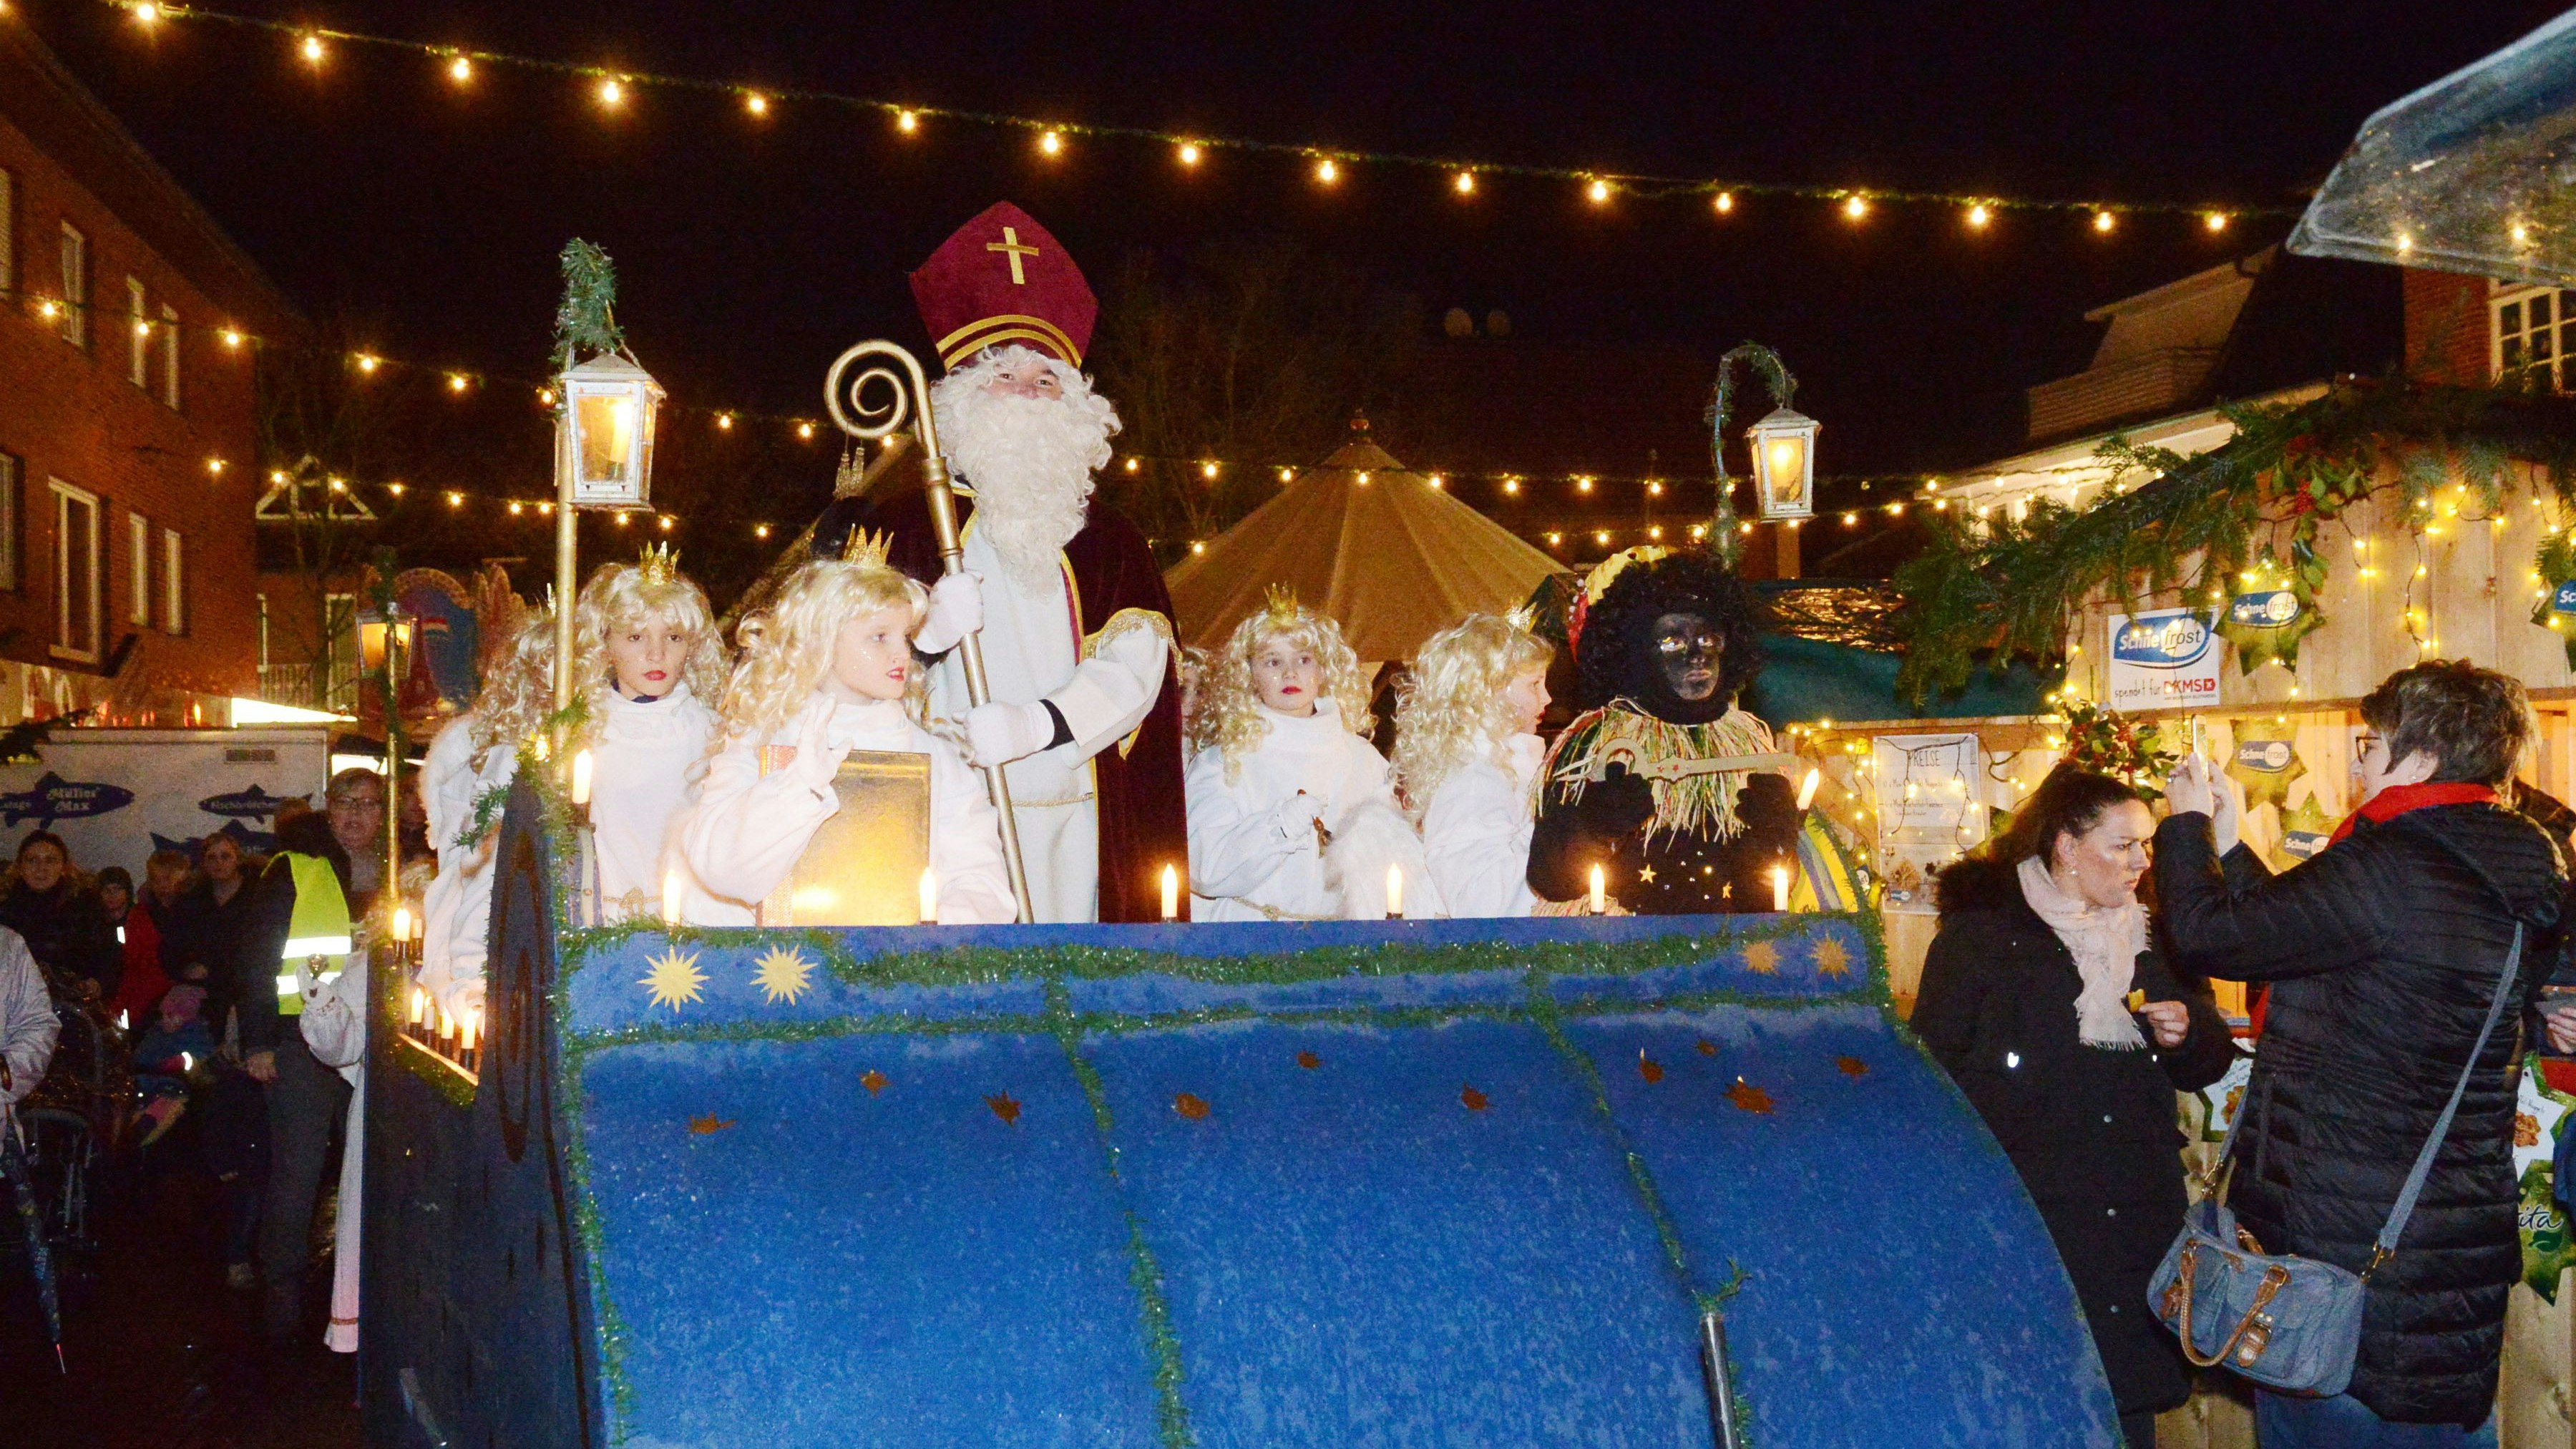 Löningen organisiert einen Weihnachtsmarkt: Für den 4. und 5. Dezember laden die Kaufleute in die kleine Budenstadt "Auf dem Gelbrink" ein. Höhepunkt ist der Nikolausumzug, der auf dem Weihnachtsmarkt endet. Archivfoto: Siemer